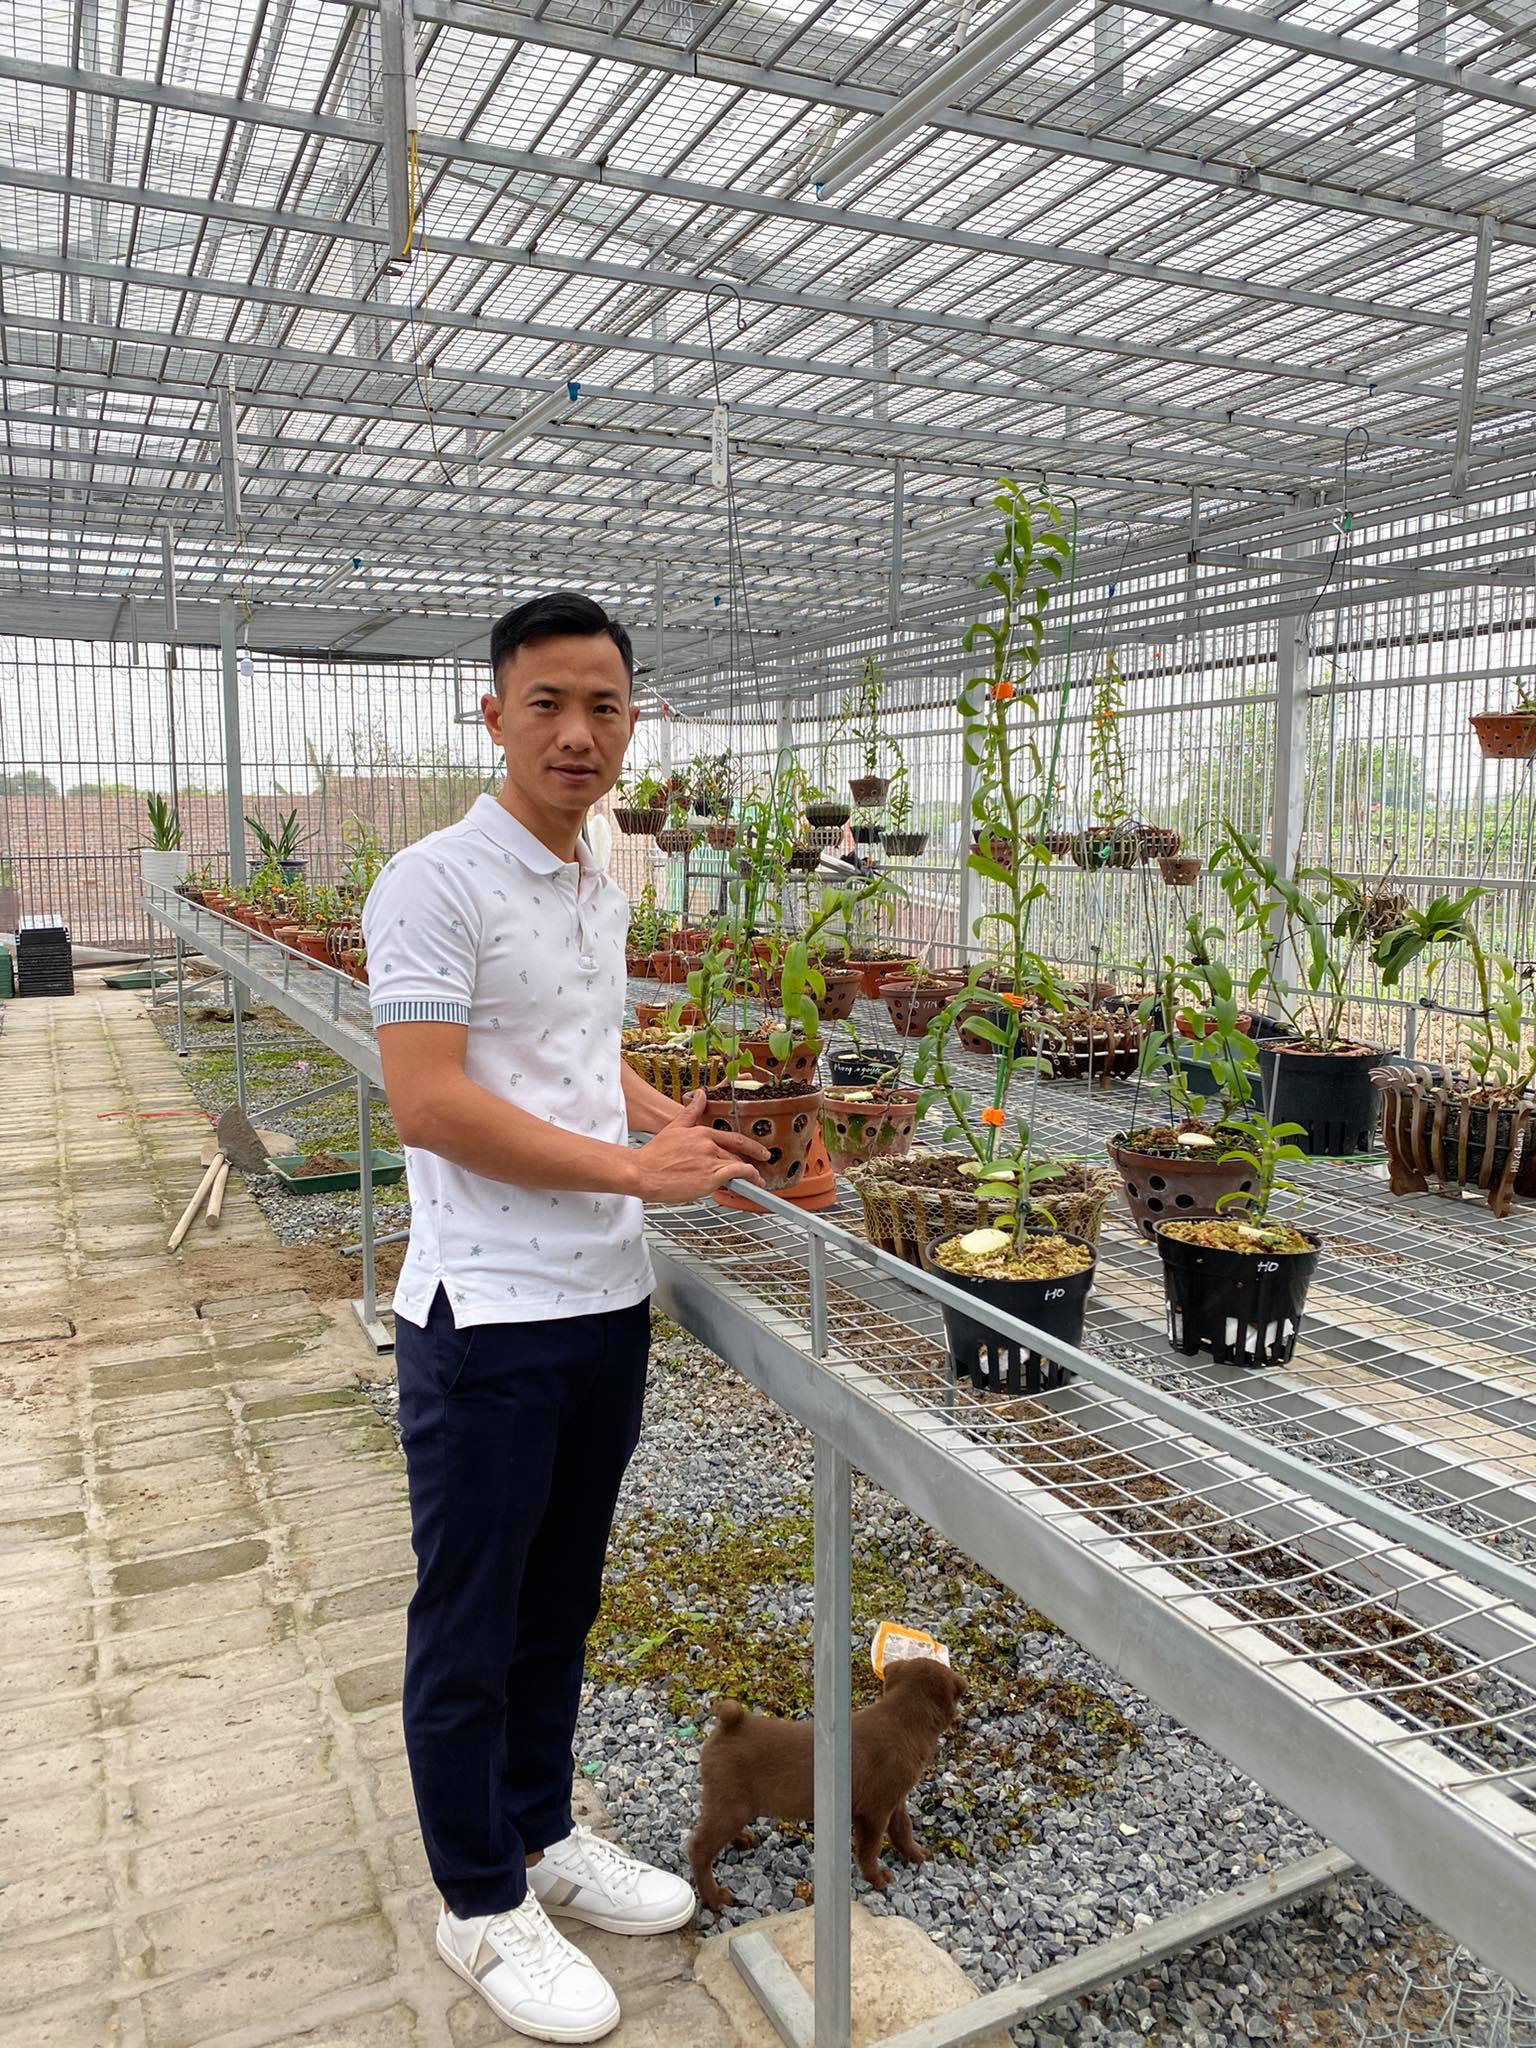 Ông chủ vườn lan Sỹ Trần: “Con nhà nòi” và hành trình gây dựng 2 vườn lan ở Thái Bình, Hải Dương - Ảnh 2.